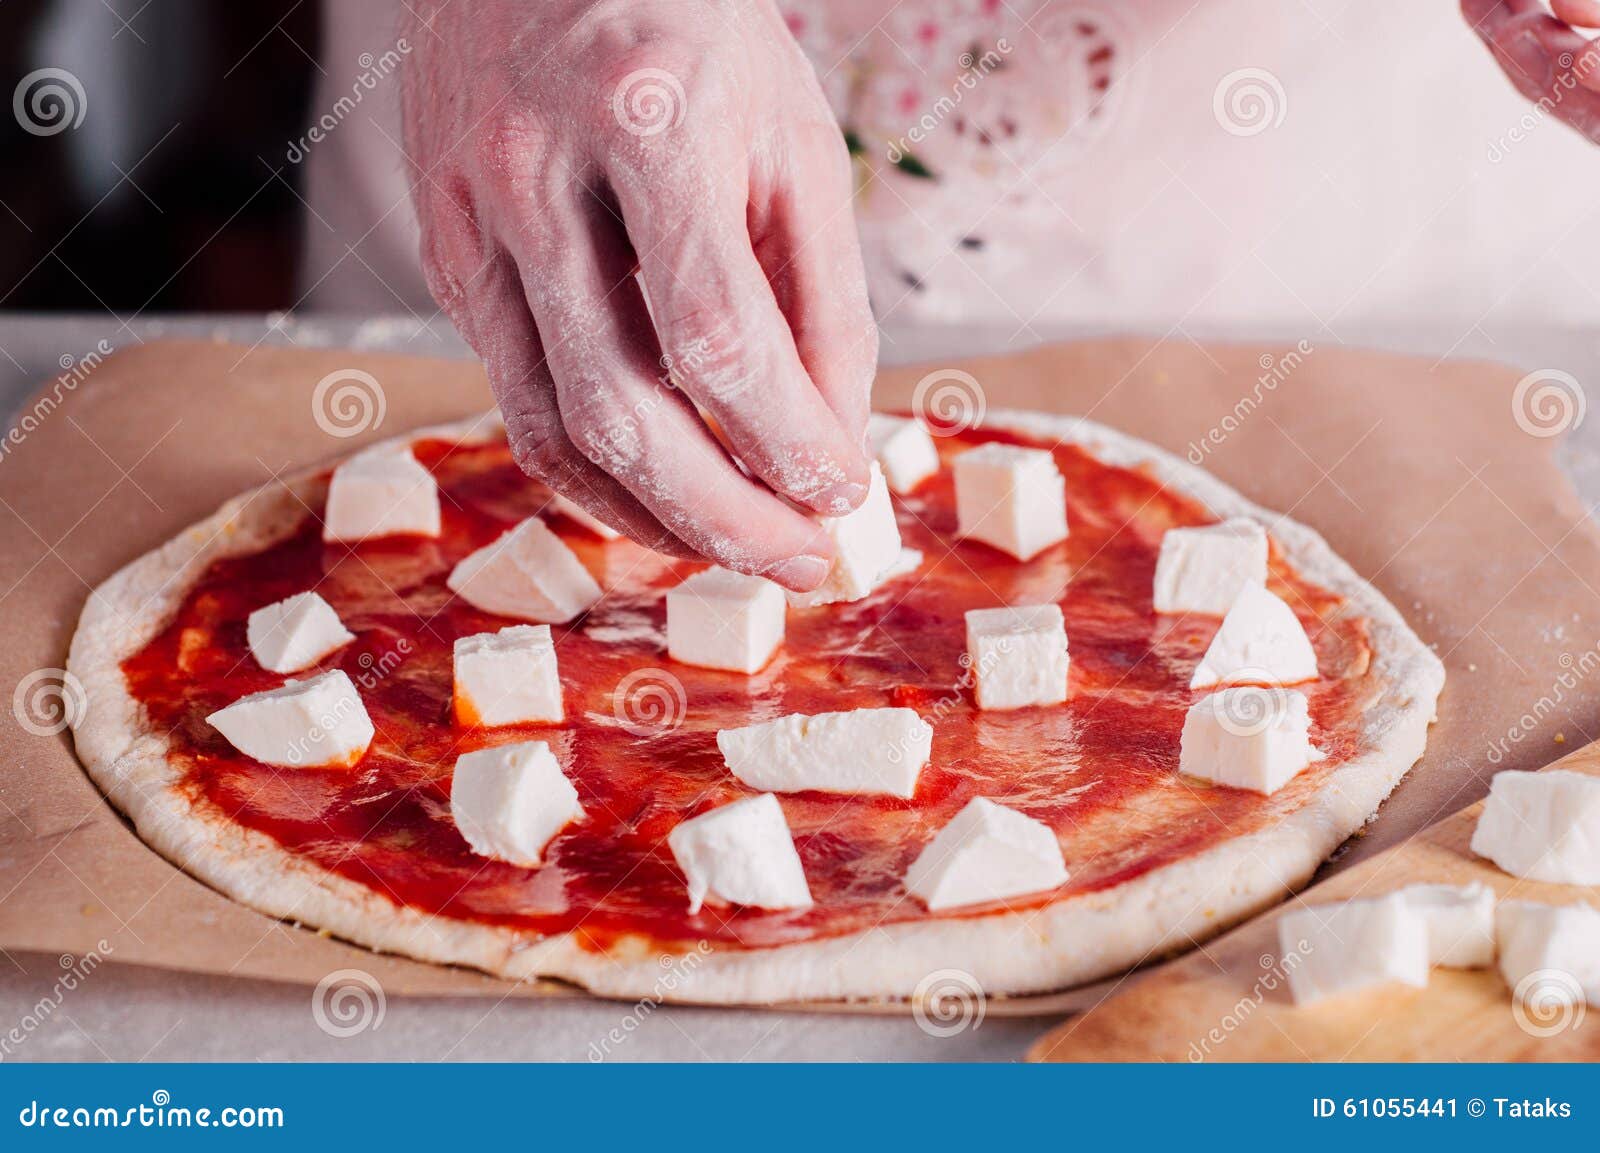 что ложат на тесто в пицце фото 113